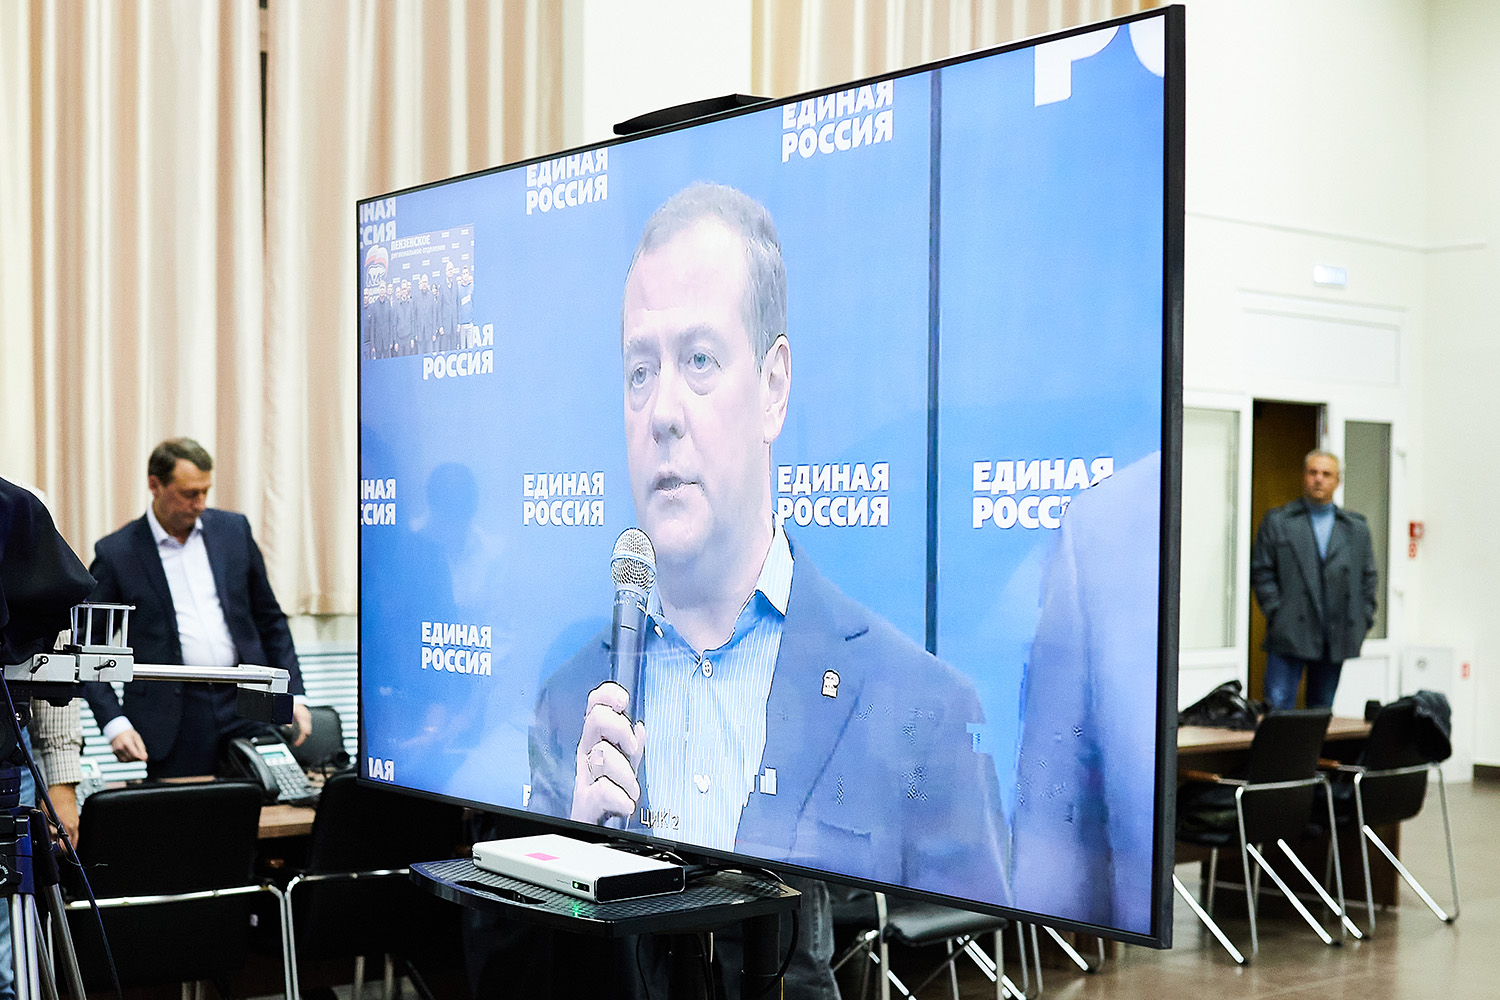 Дмитрий Медведев провел селекторное совещание с регионами, подводя итоги голосования